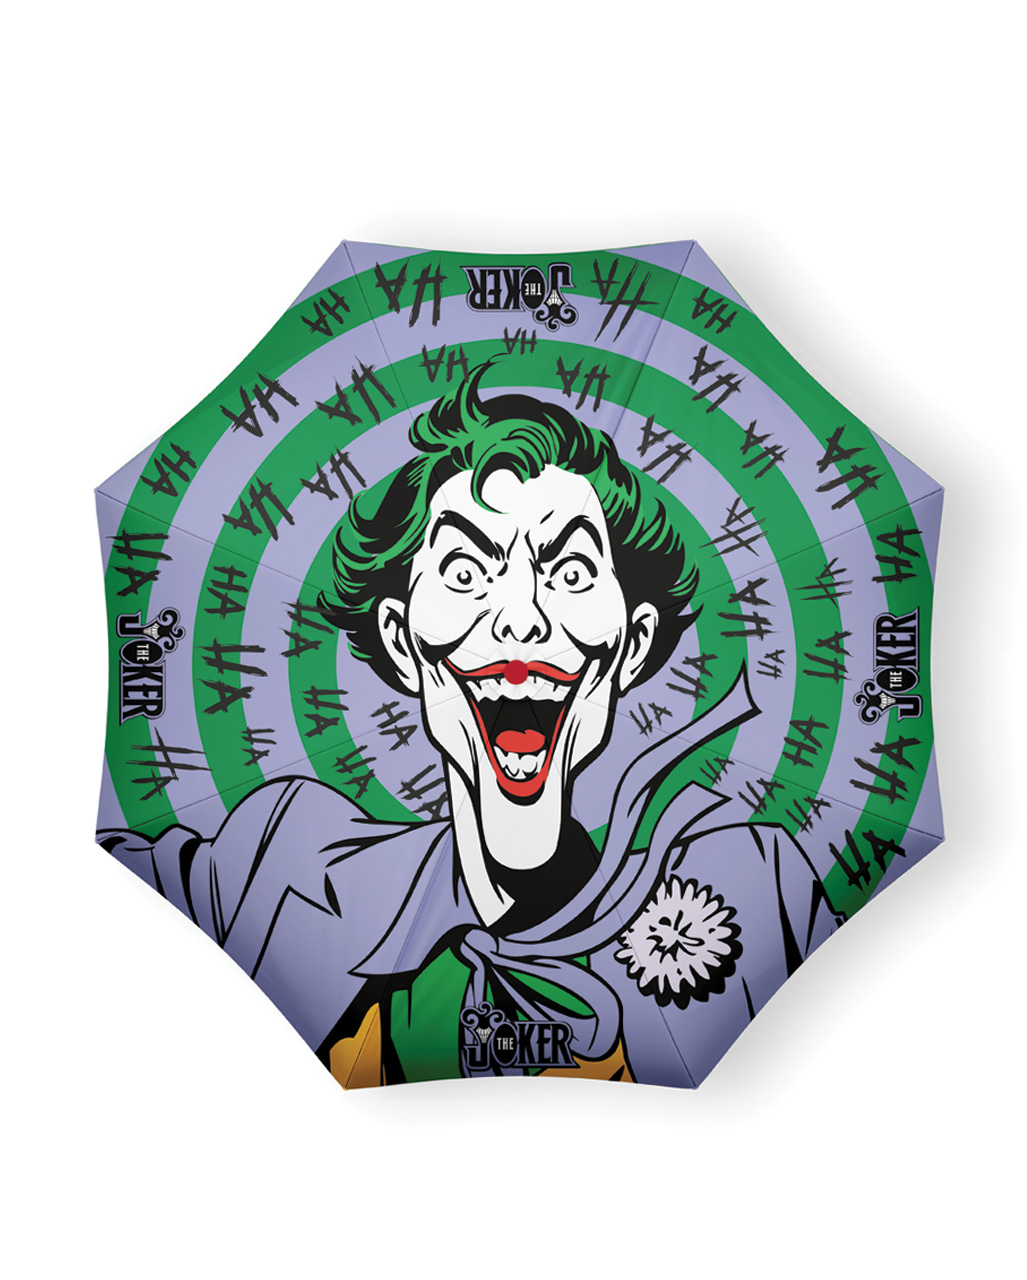 The Joker DC Comics Regenschirm als Geschenkidee